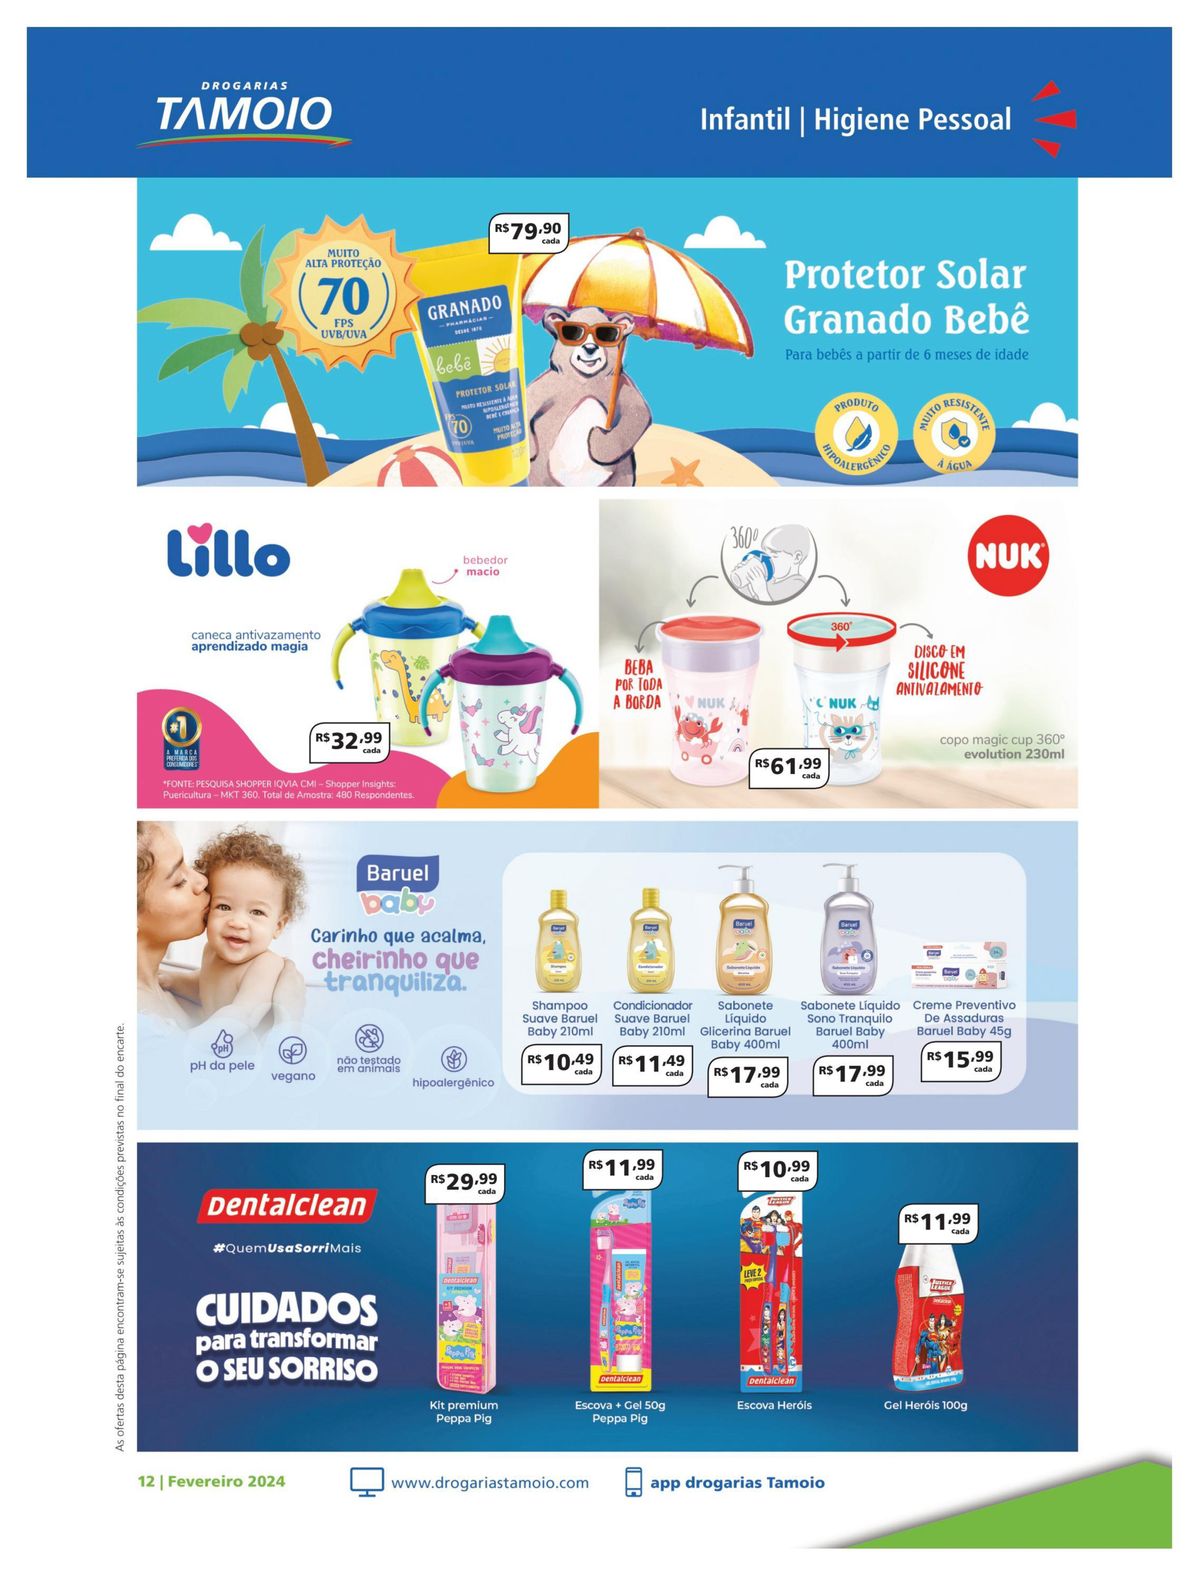 Higiene Pessoal Infantil - Produtos Baruel em Promoção